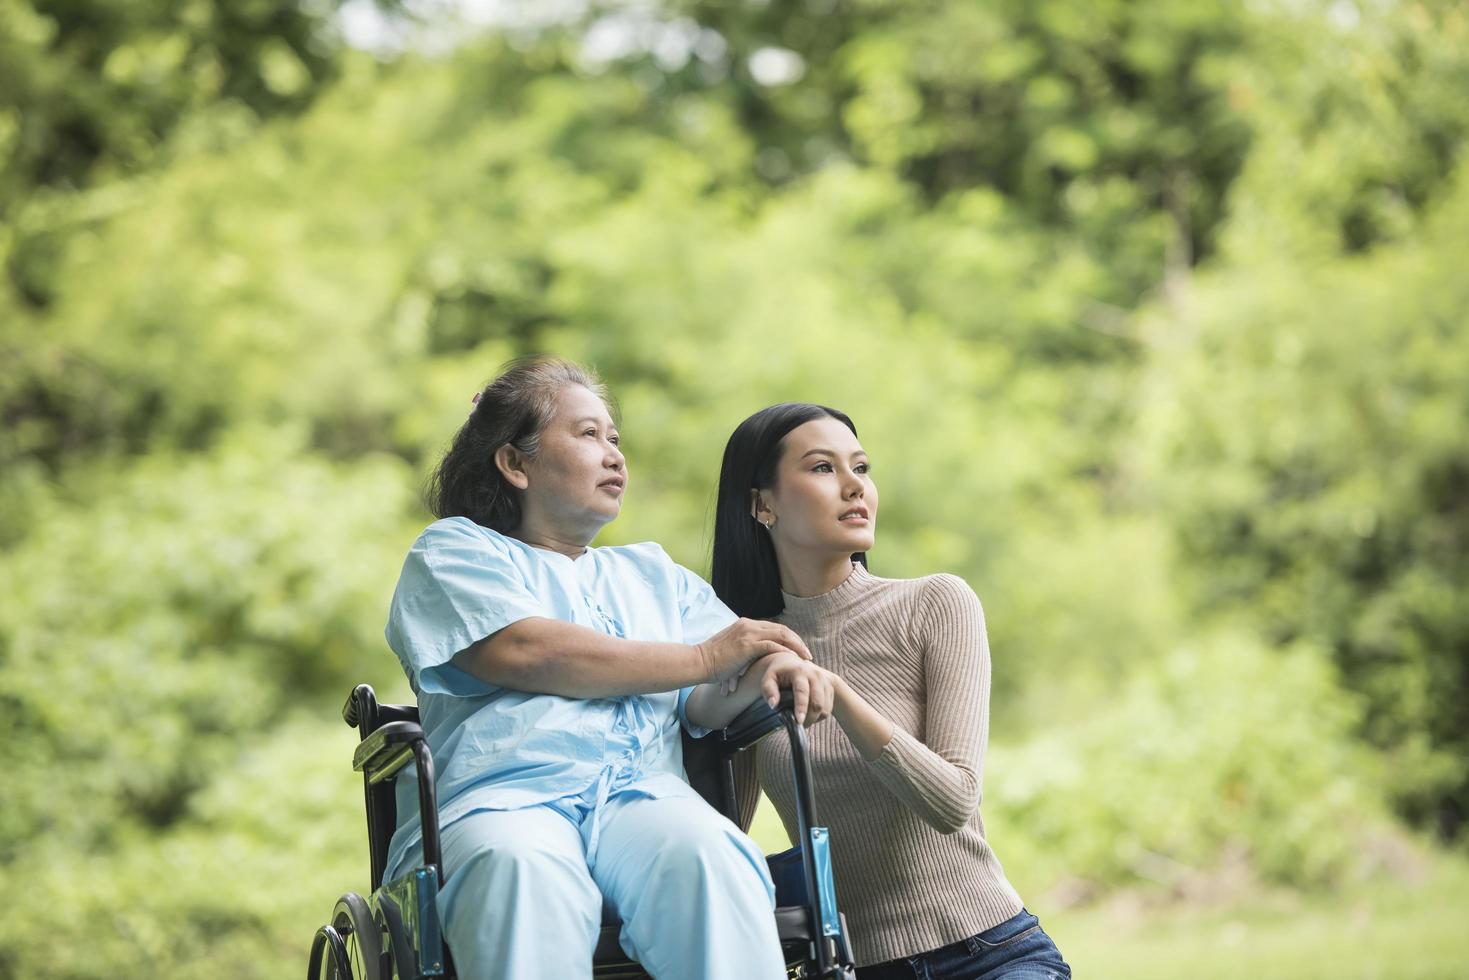 Enkelin im Gespräch mit ihrer Großmutter im Rollstuhl sitzend foto